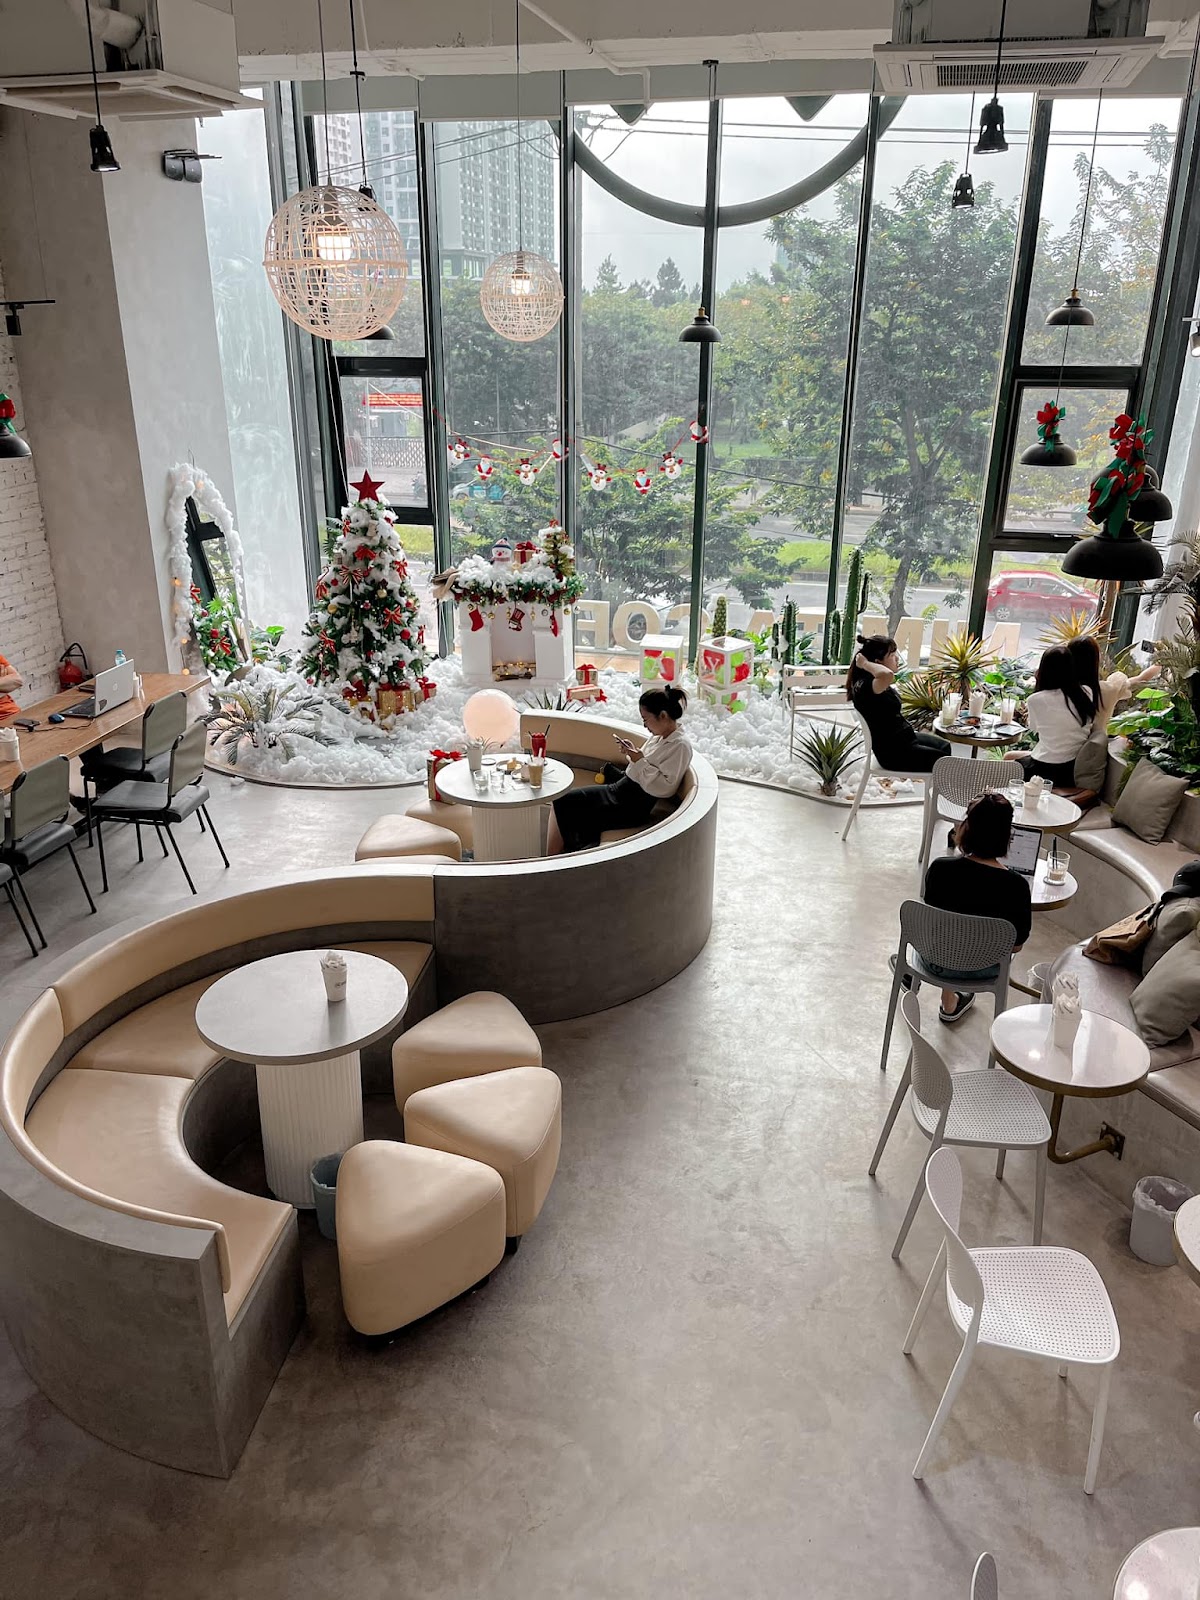 4 quán cà phê “sang-xịn” để tận hưởng không khí mùa Noel tại Hà Nội: Trang hoàng rực rỡ, không gian như trời Tây - Ảnh 10.